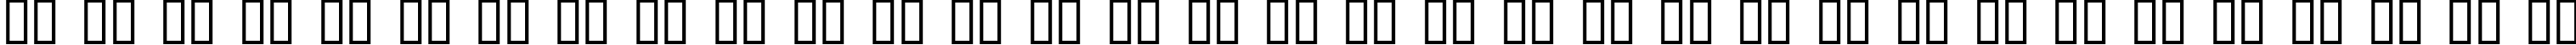 Пример написания русского алфавита шрифтом Pixel